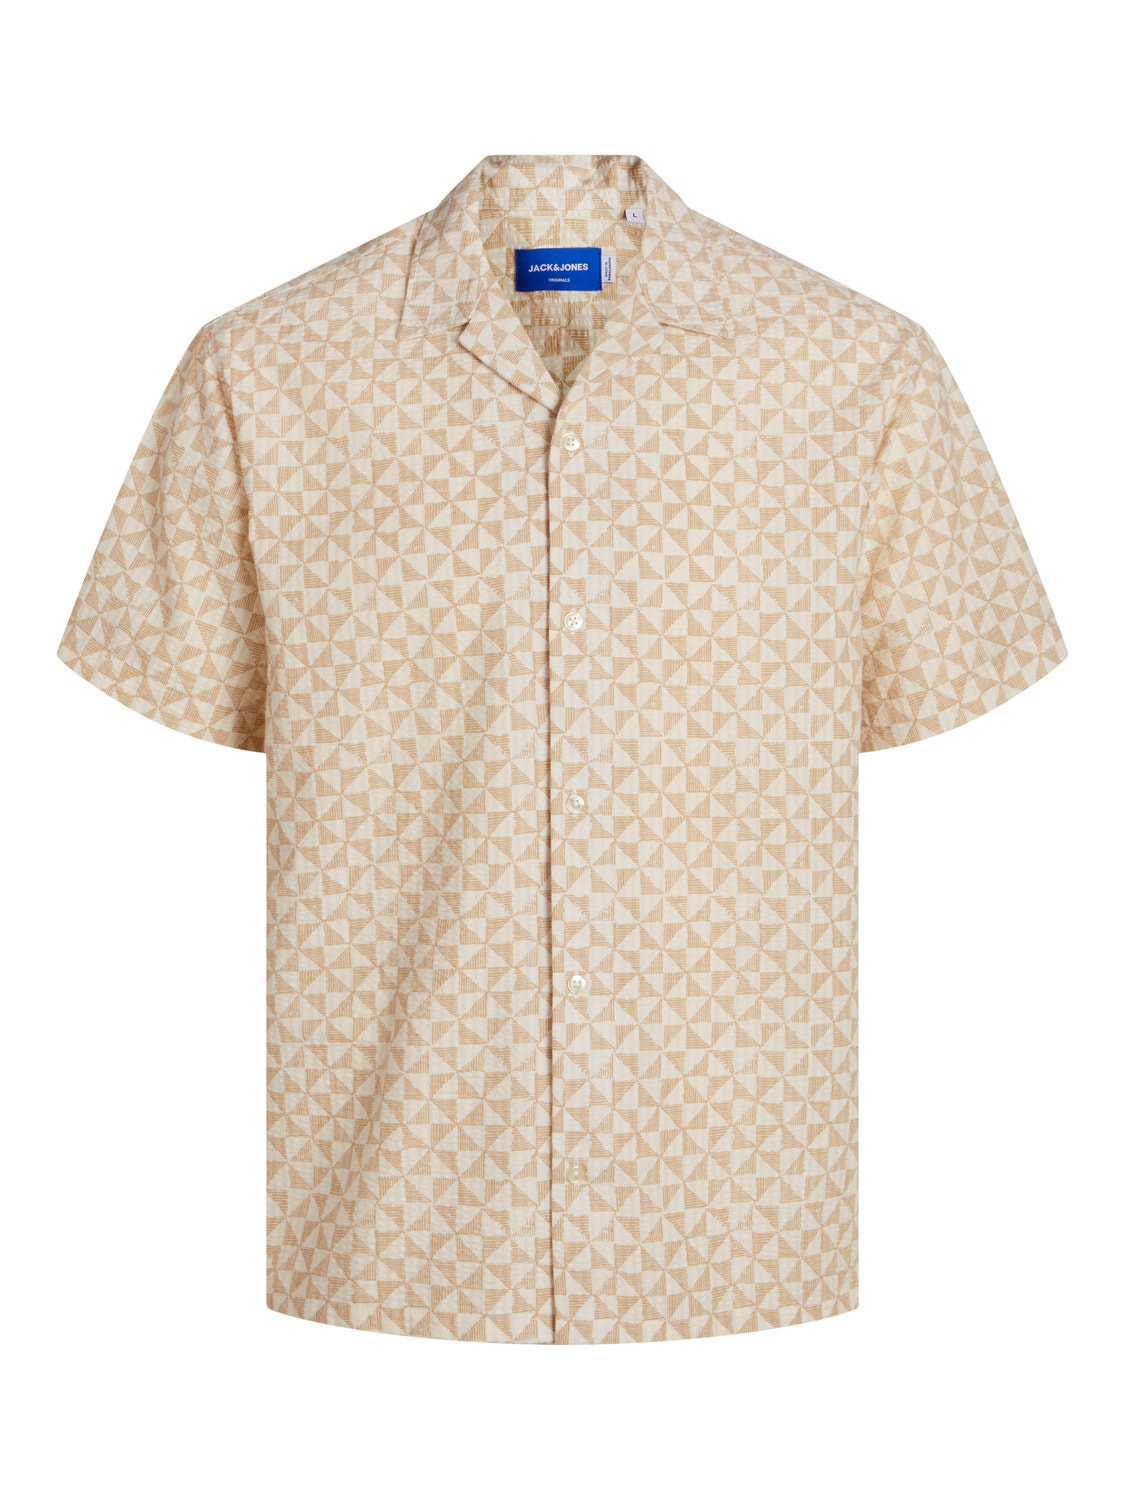 Jack & Jones Relaxed Fit Resort shirt -Buttercream - 12255206